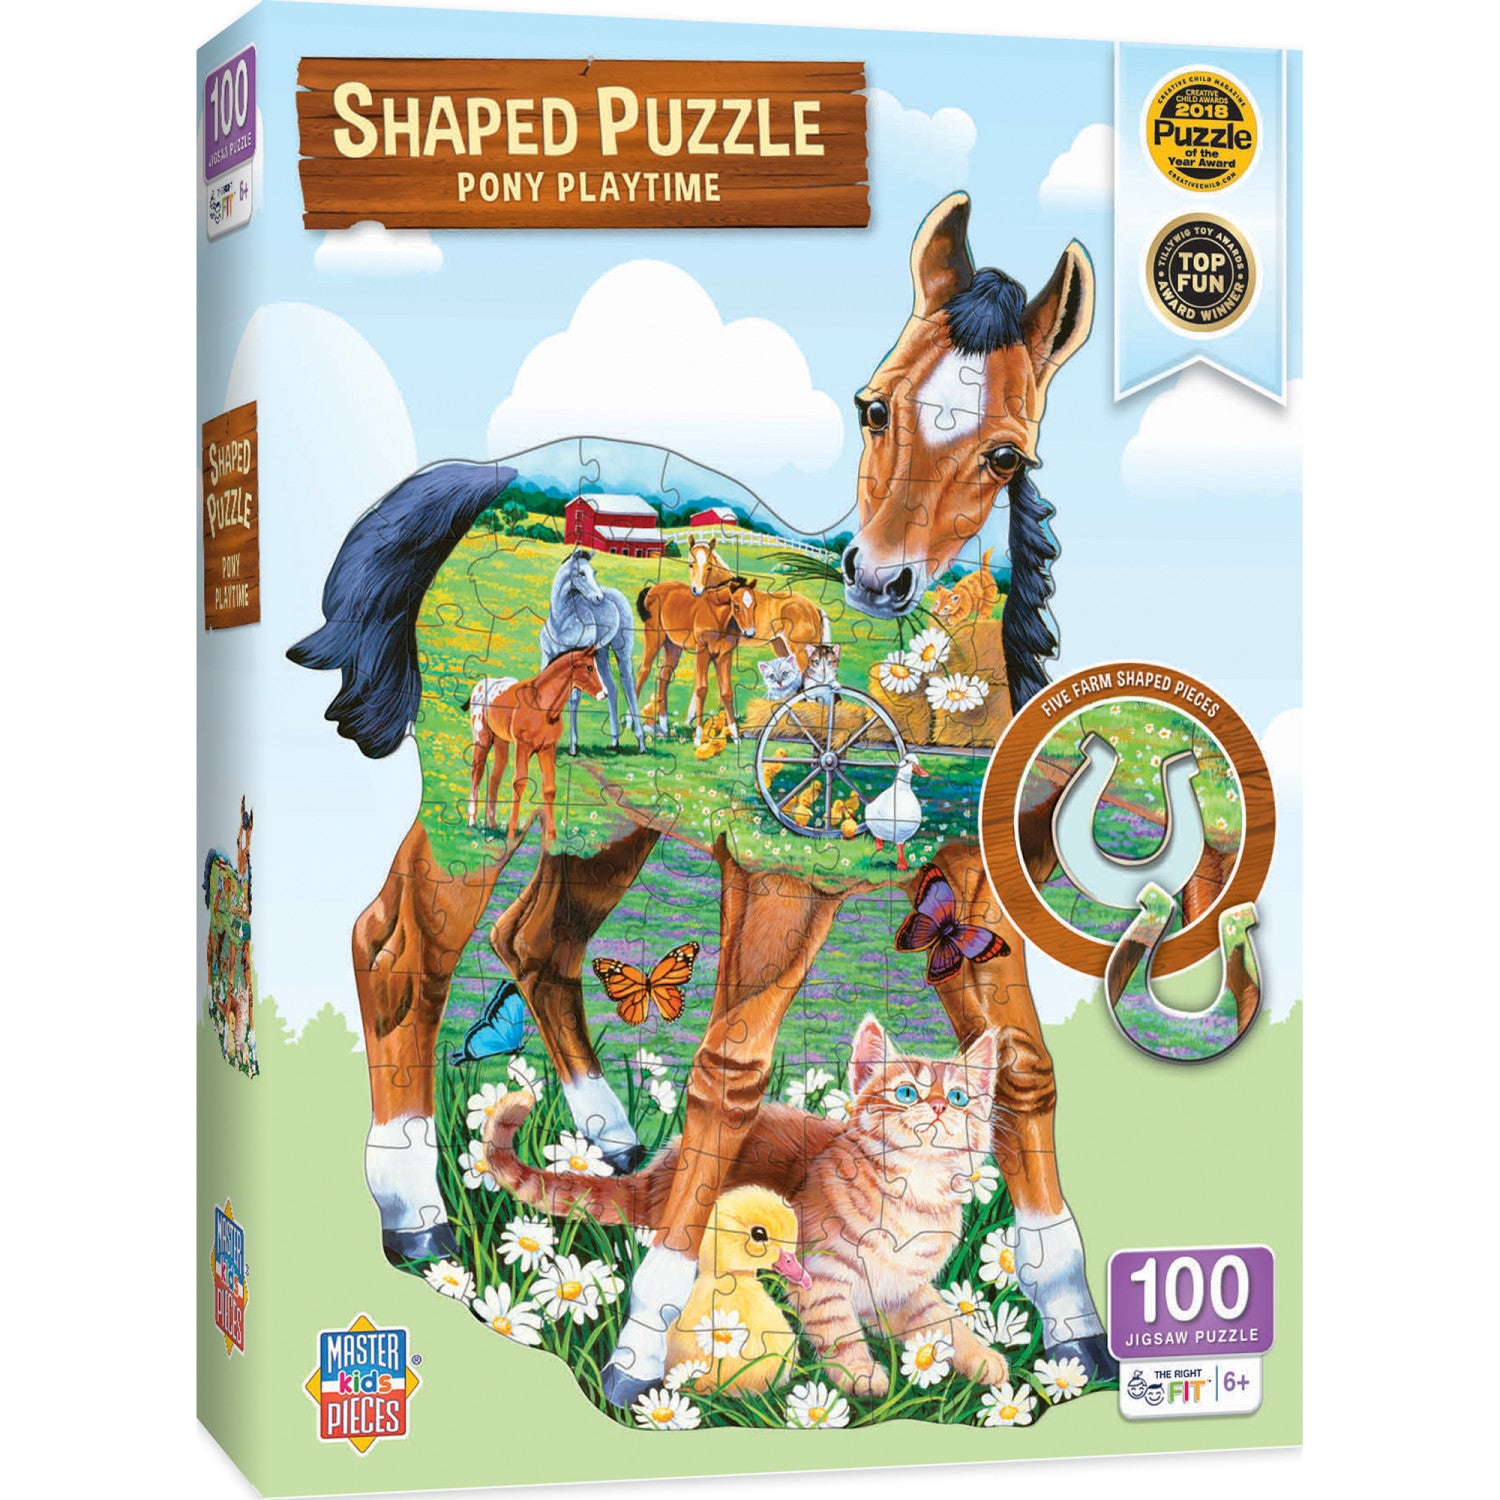 Pony Playtime - 100 Piece Shaped Jigsaw Puzzle